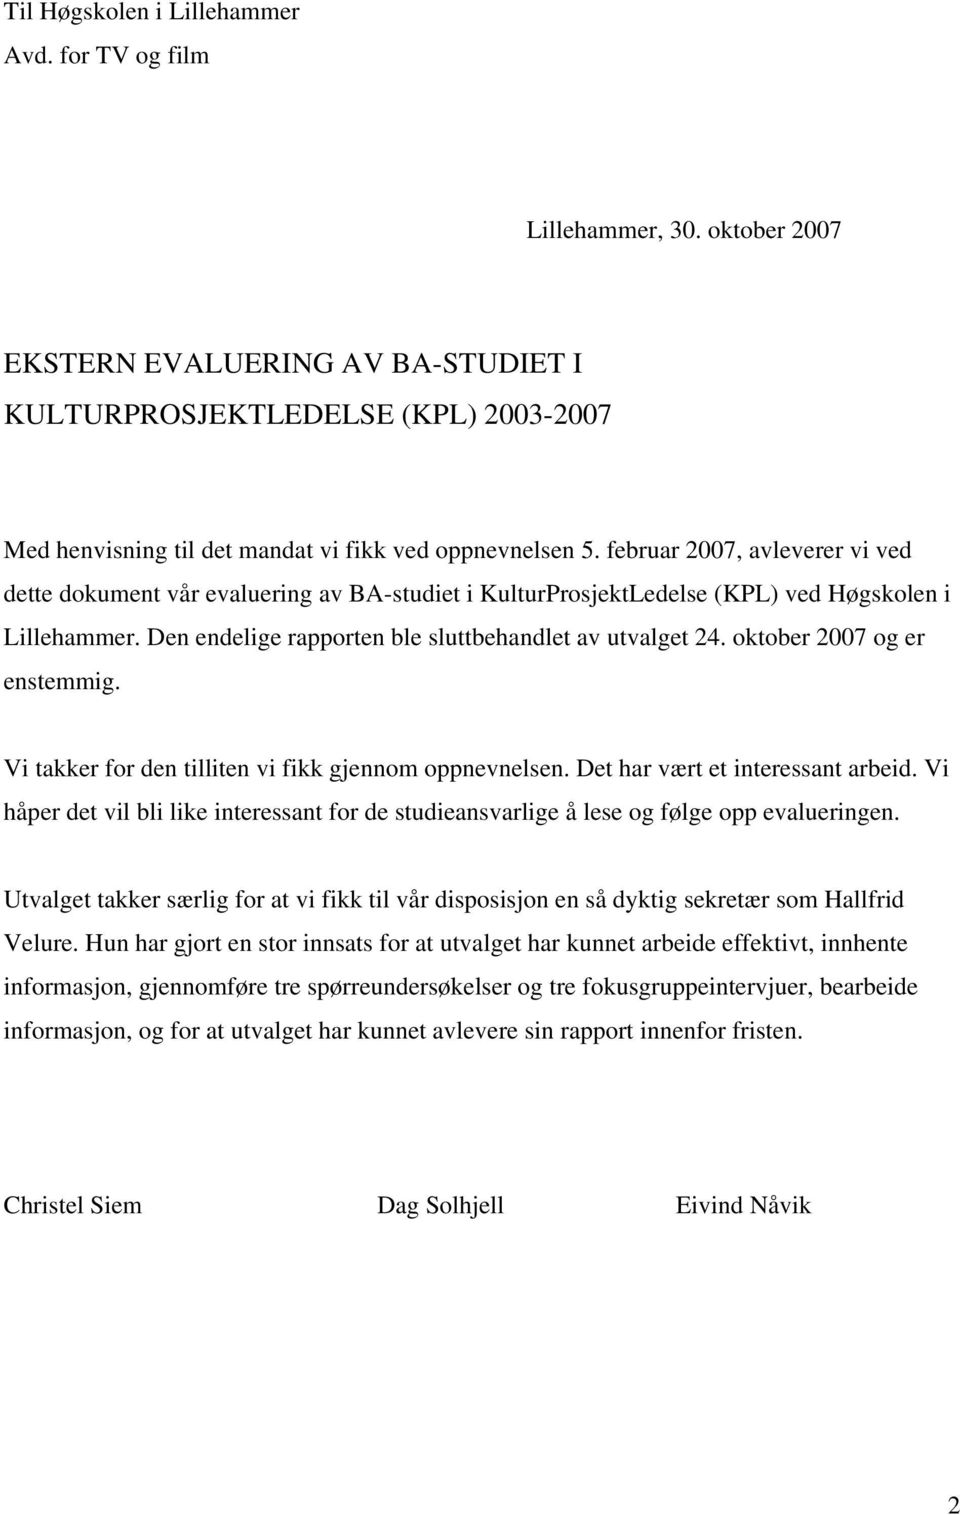 februar 2007, avleverer vi ved dette dokument vår evaluering av BA-studiet i KulturProsjektLedelse (KPL) ved Høgskolen i Lillehammer. Den endelige rapporten ble sluttbehandlet av utvalget 24.